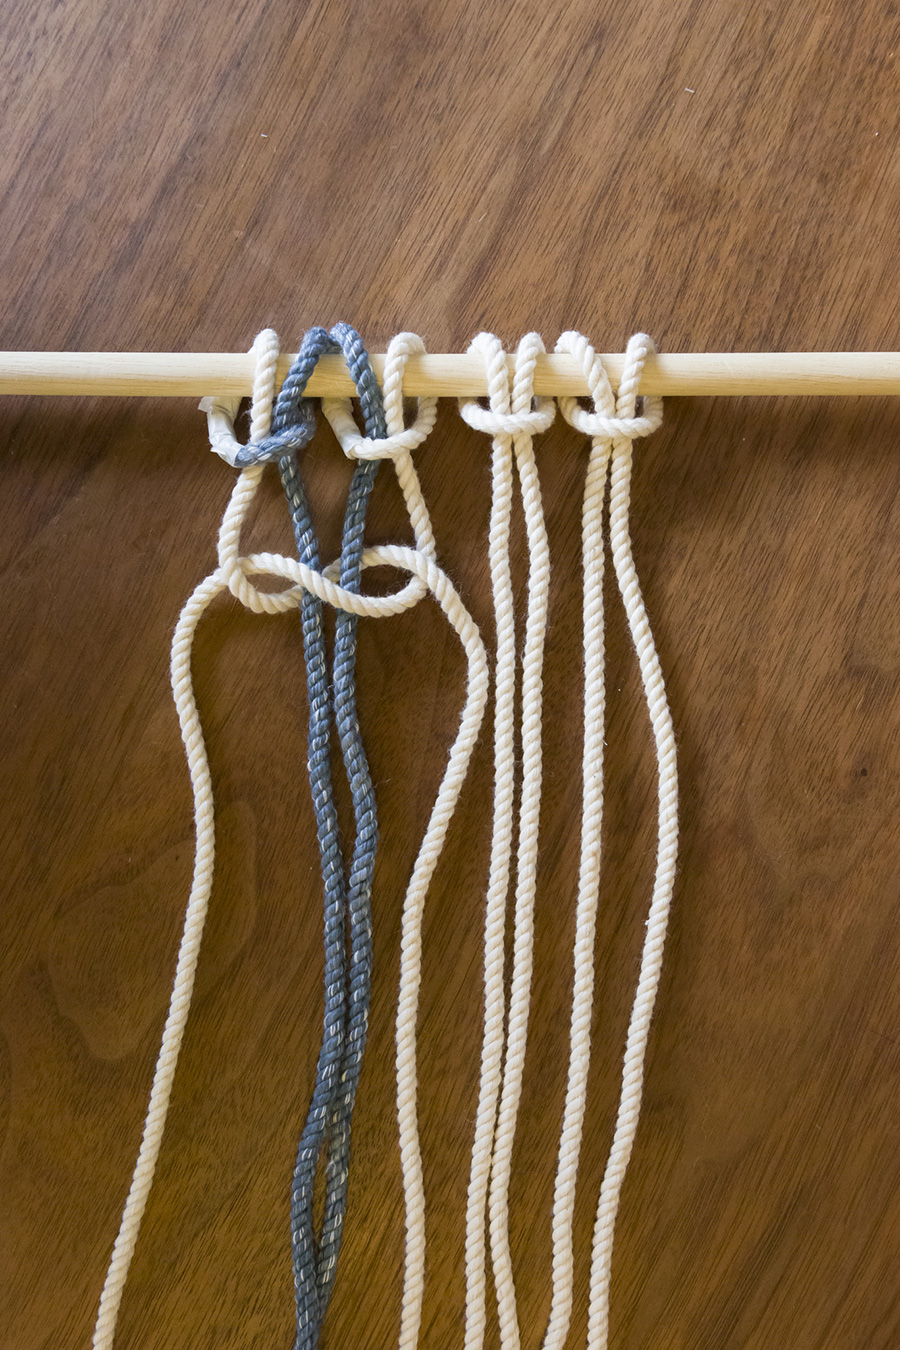 ②隣り合う４本のロープを編む。”右”端のロープを、真ん中の２本の “上”を通り左端のロープにくぐらせる。左端は真ん中をくぐらせて先端を通す。